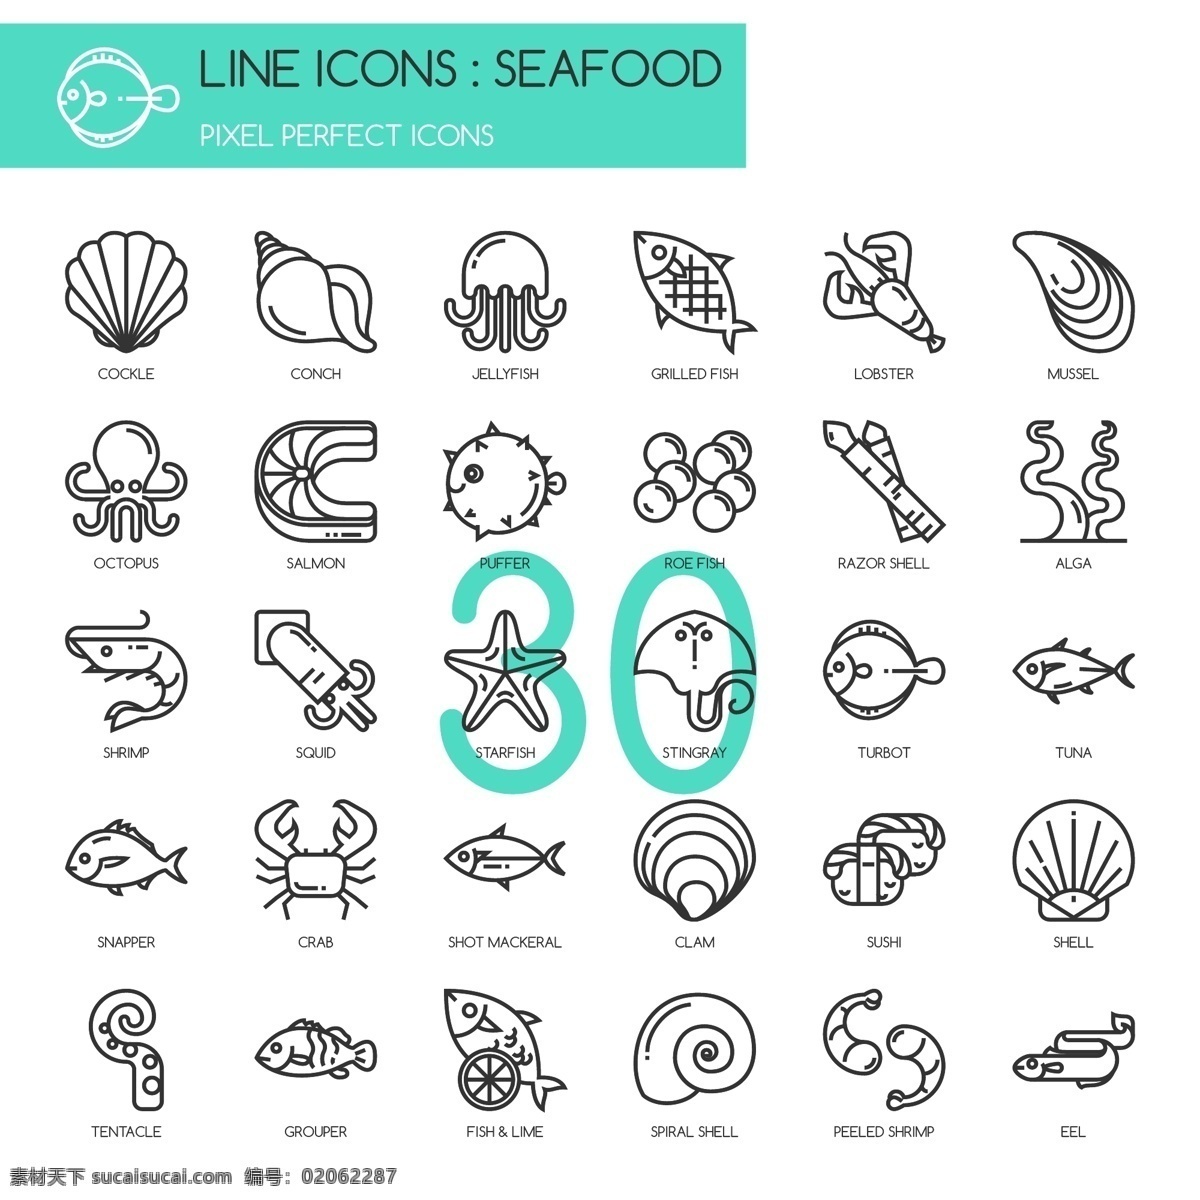 线条 手绘 海洋 用品 图标 插画 元素 海螺 海星